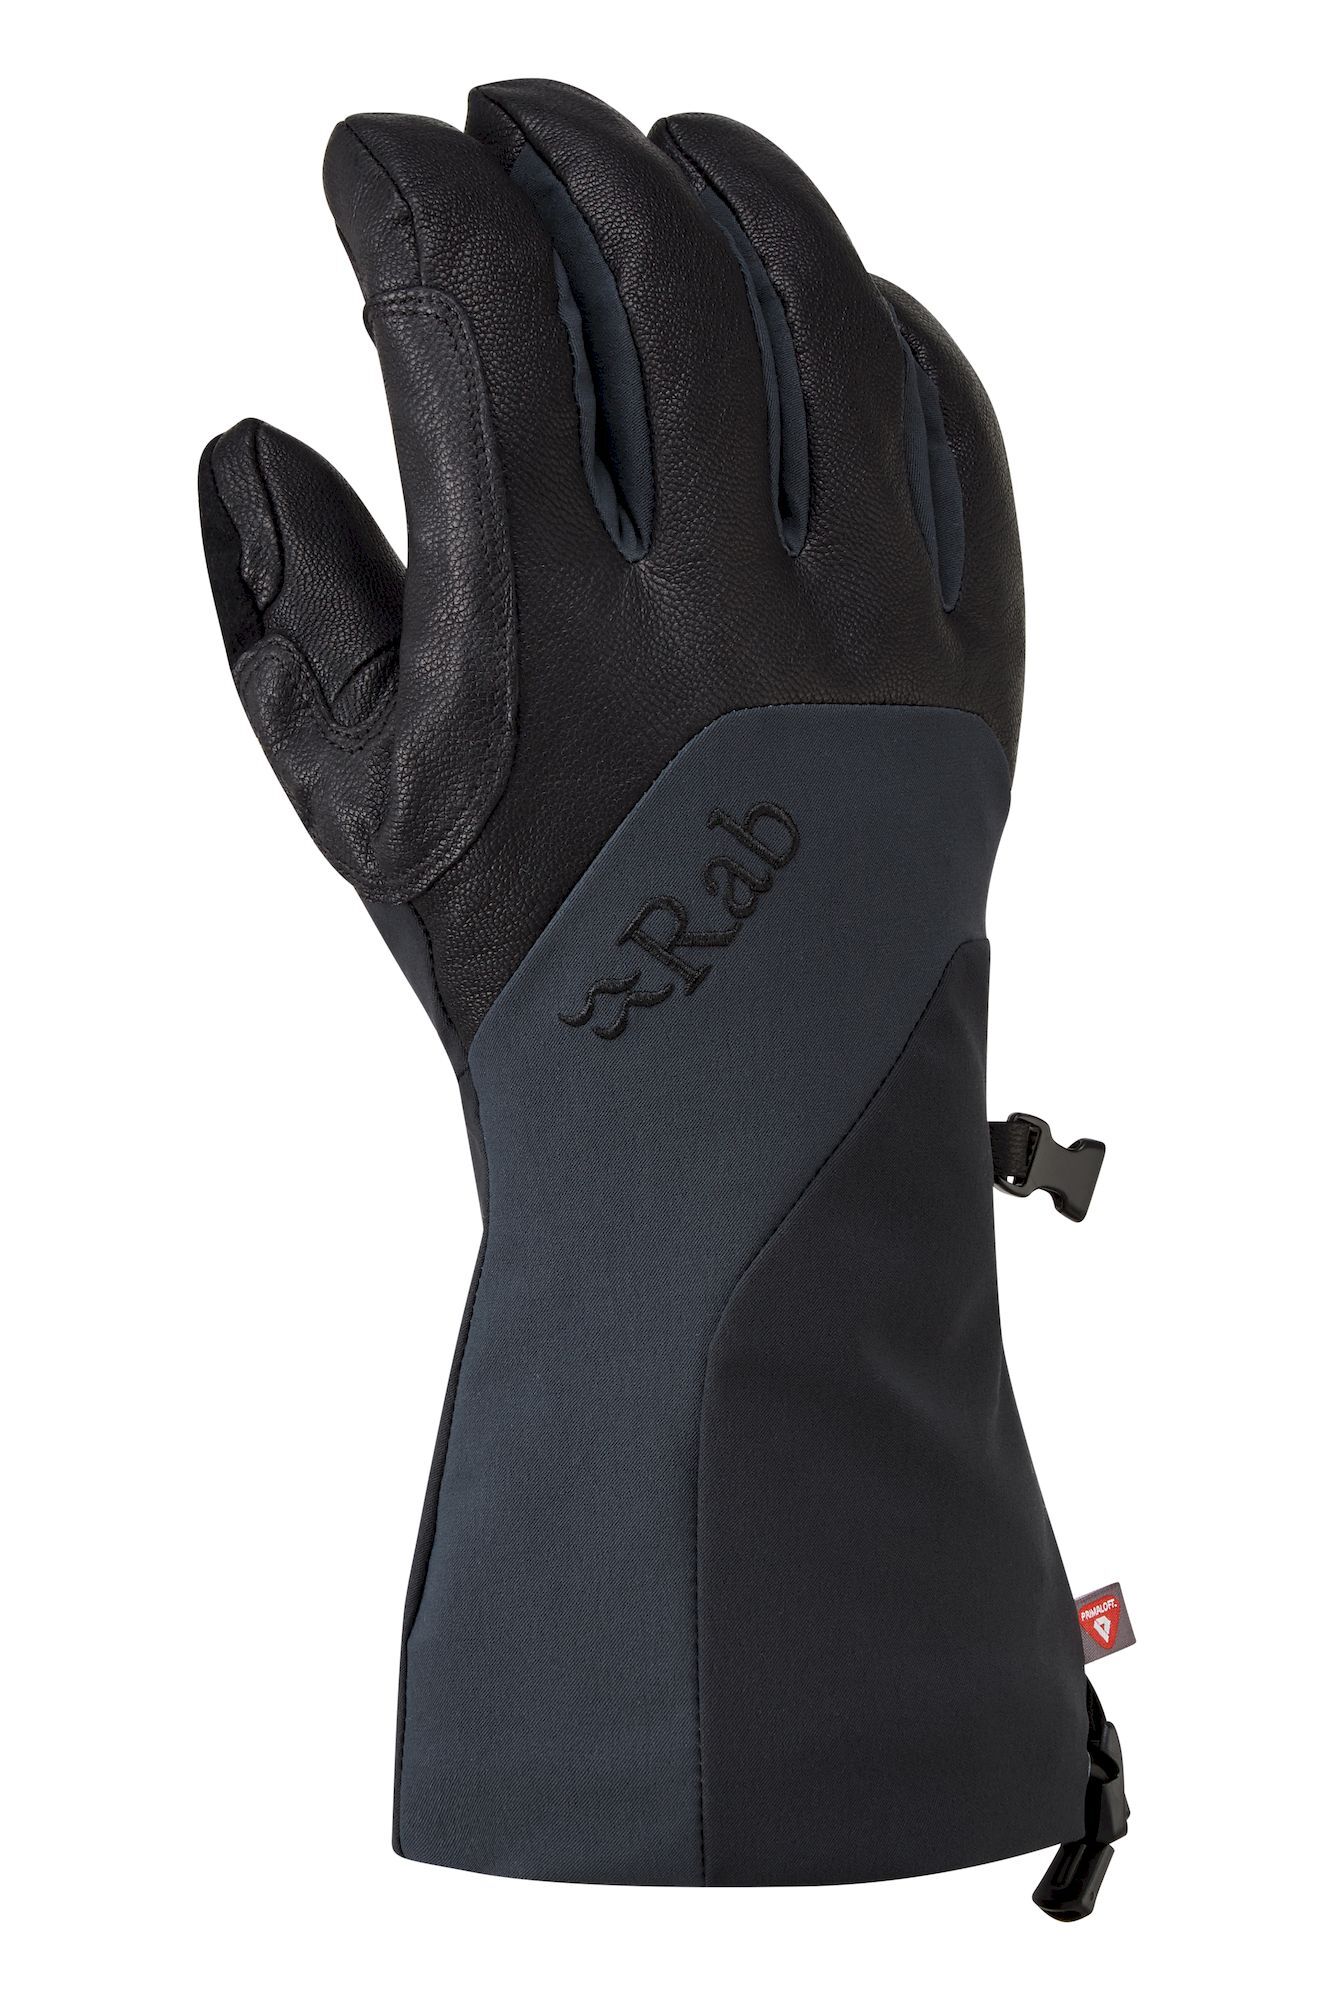 Rab Khroma Freeride GTX Gloves - Ski gloves - Men's | Hardloop